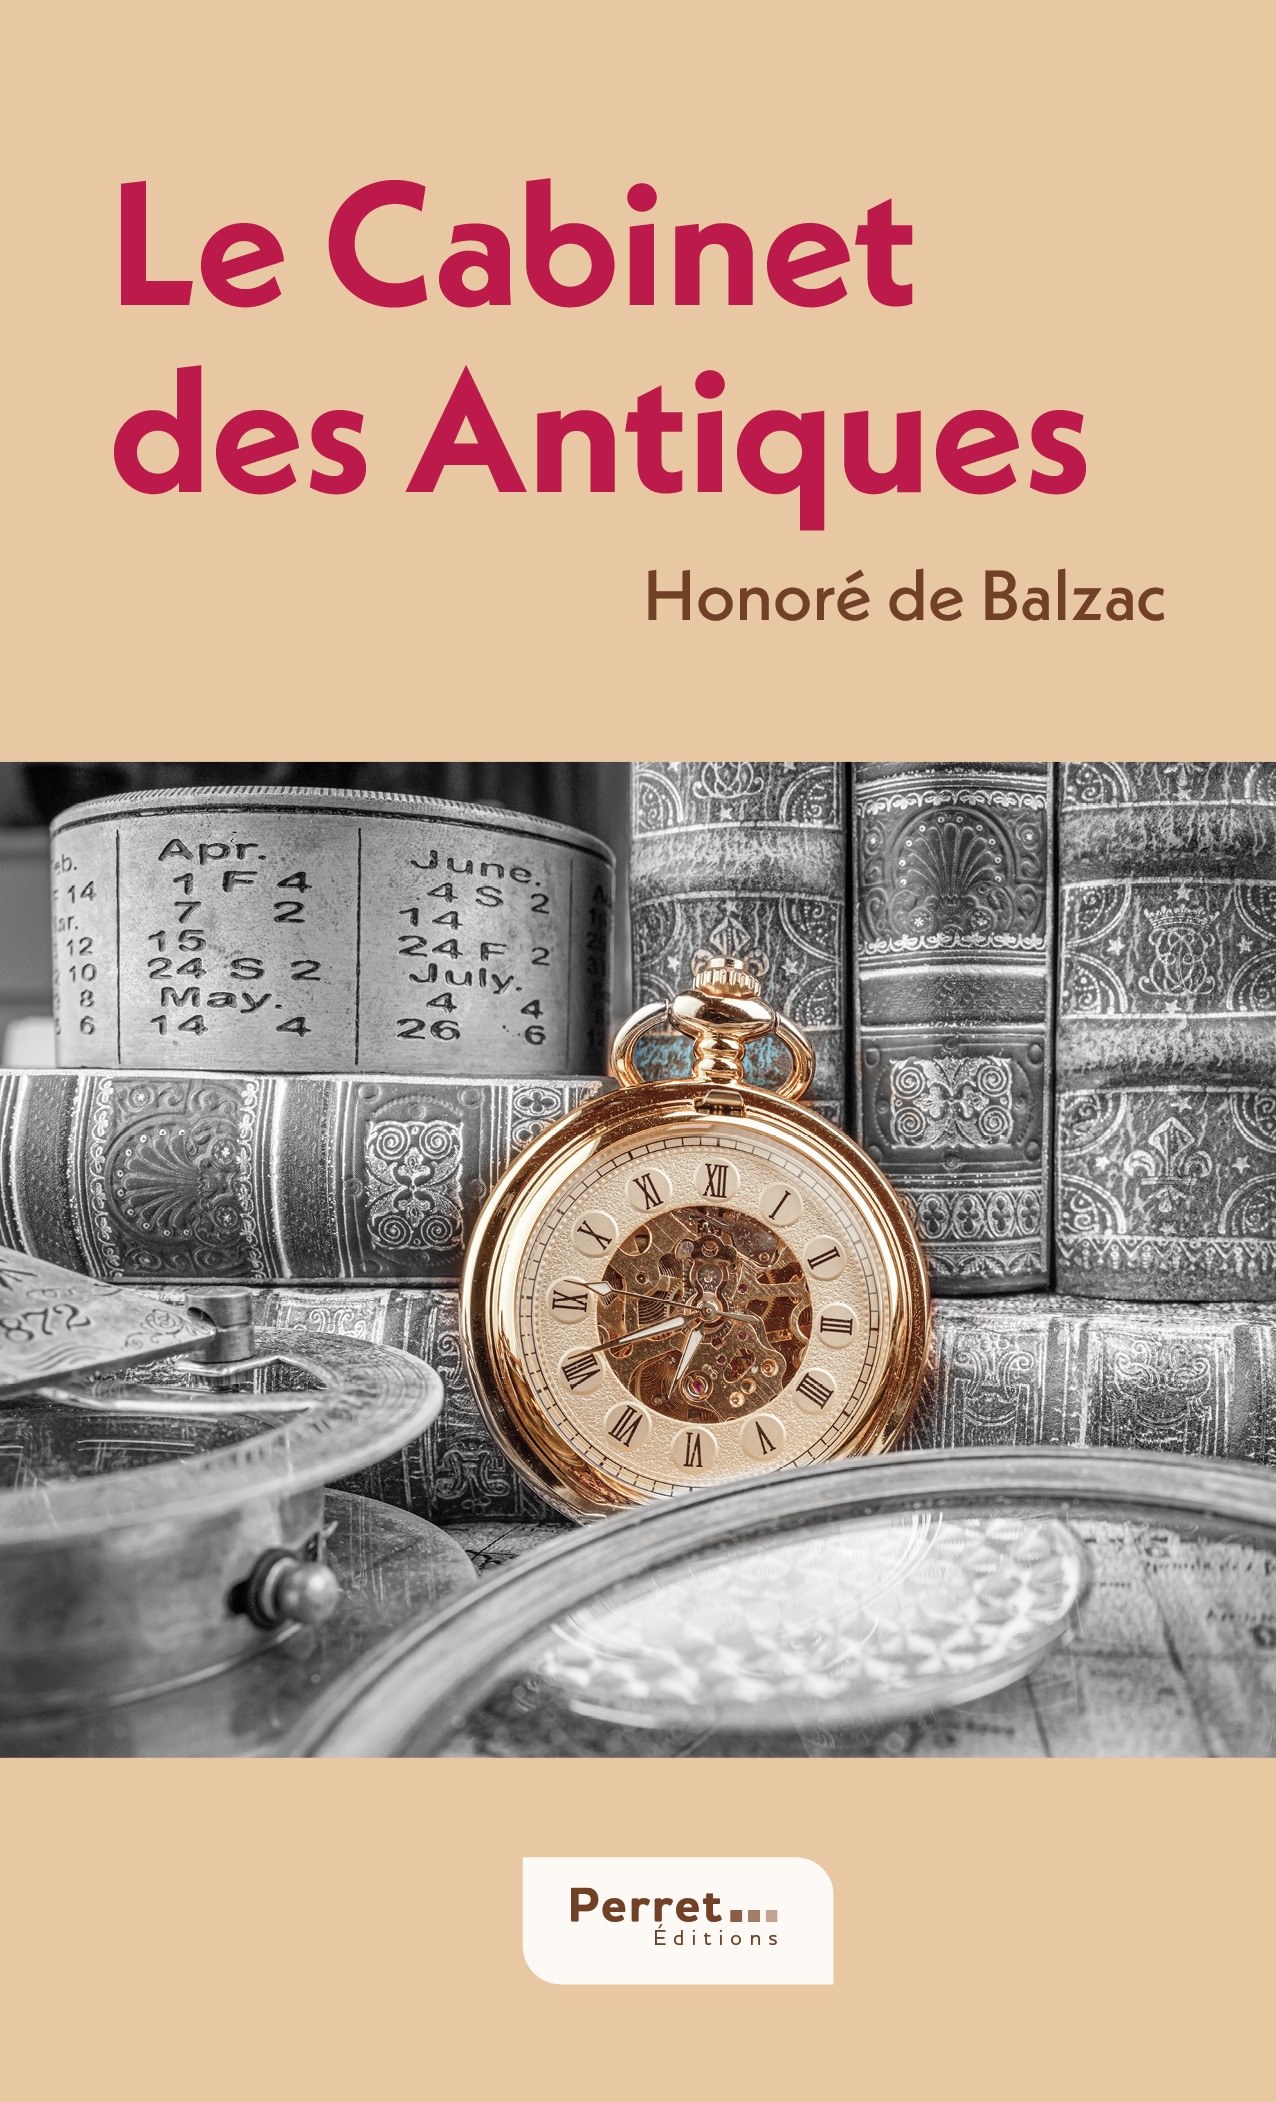 Honoré de Balzac, Le Cabinet des Antiques